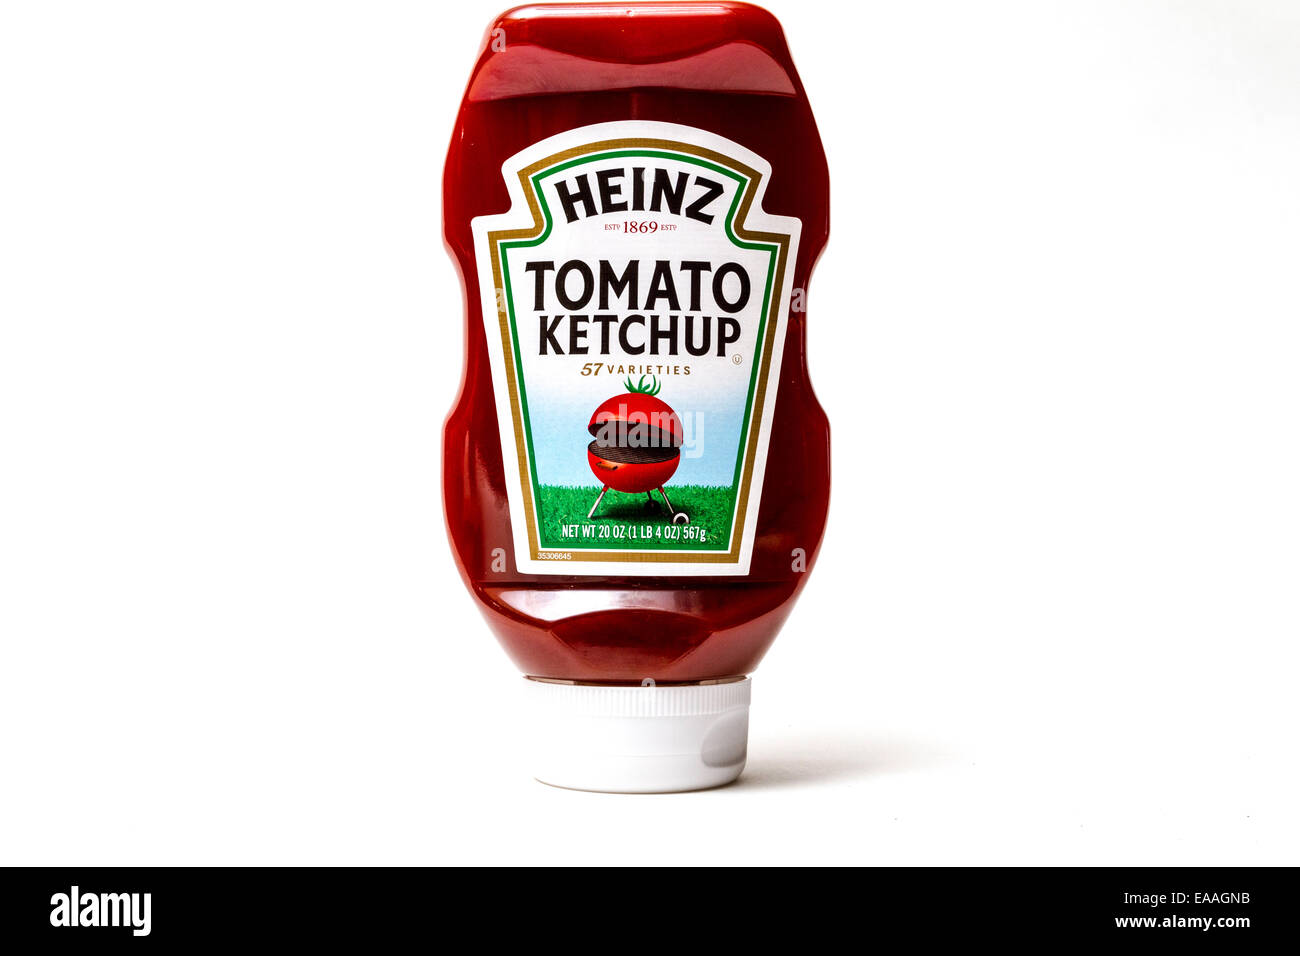 Heinz Tomato Ketchup dans une bouteille de plastique avec un barbecue en forme de tomate sur l'étiquette Banque D'Images